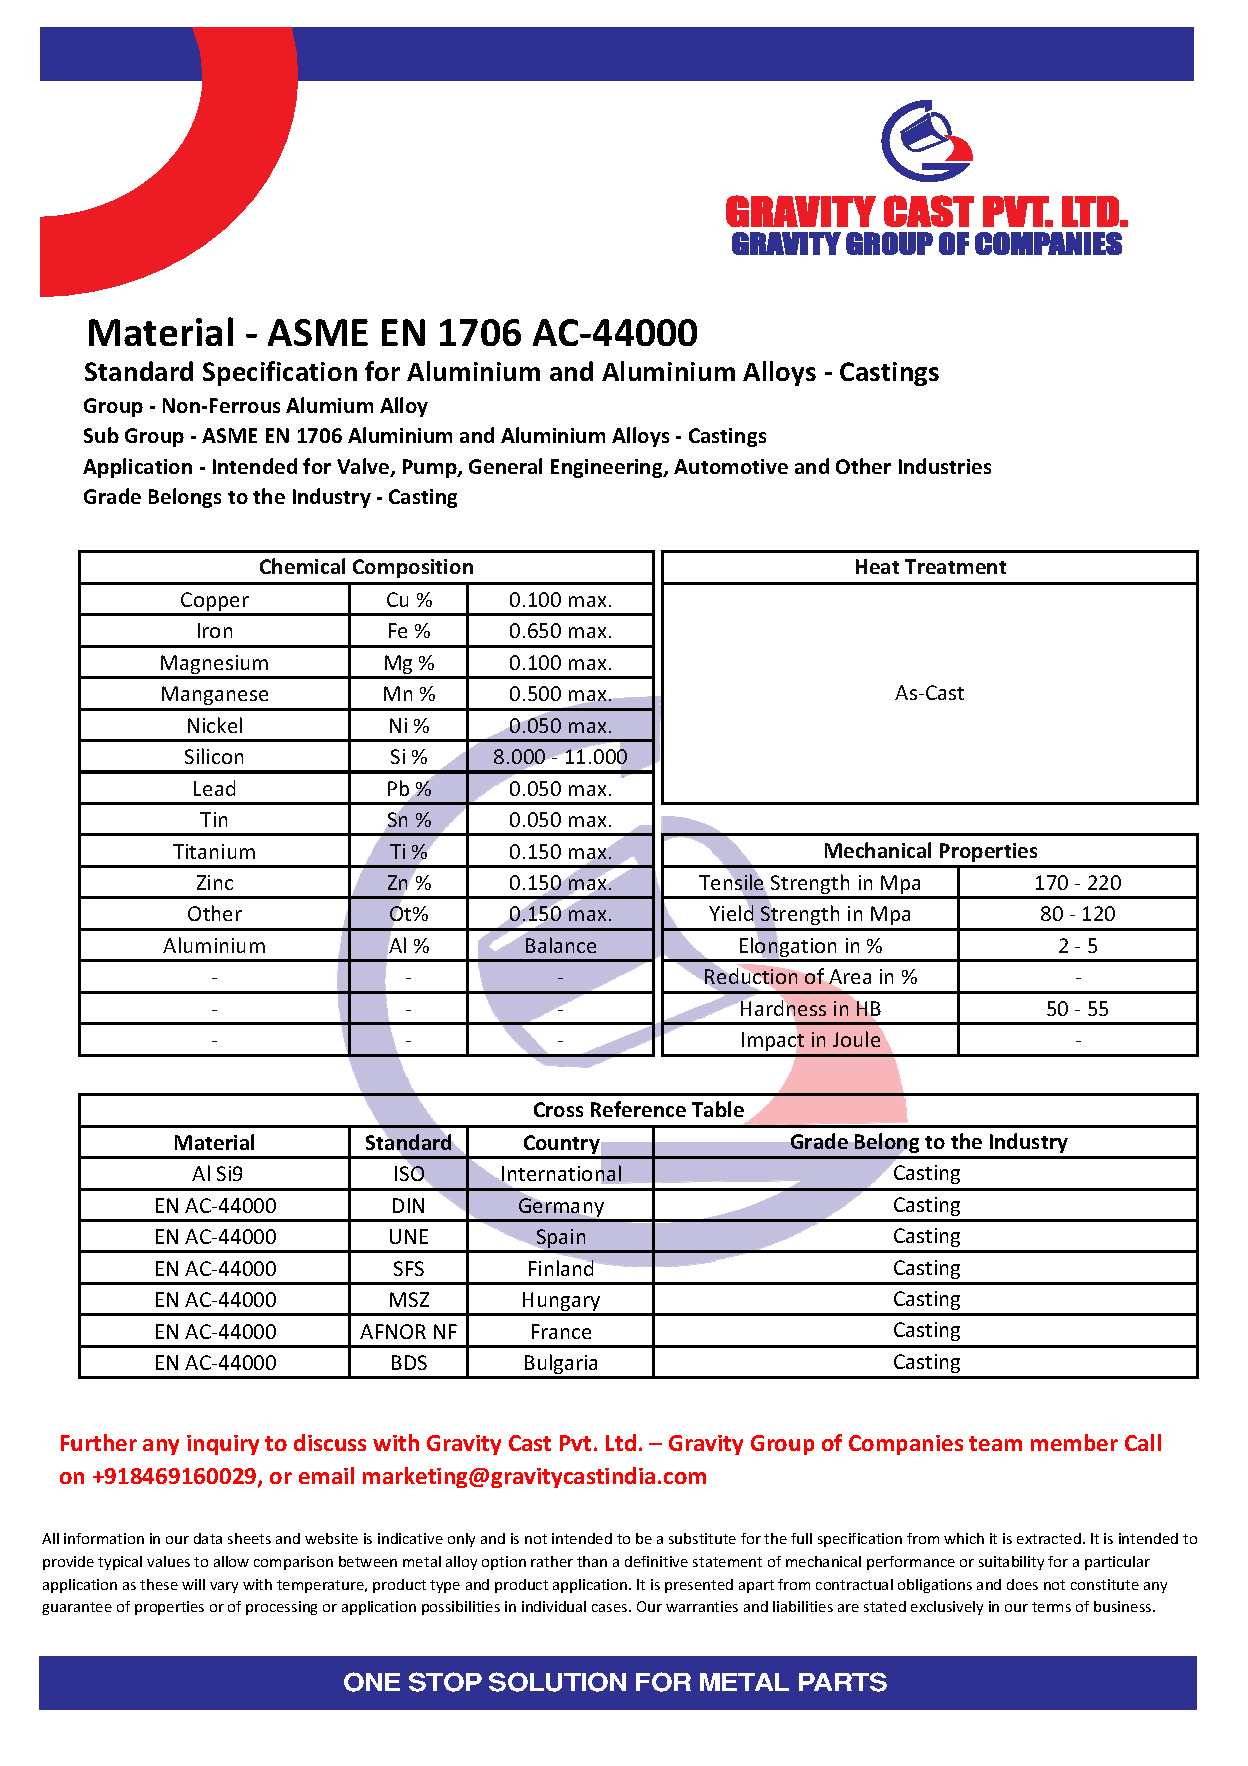 ASME EN 1706 AC-44000.pdf